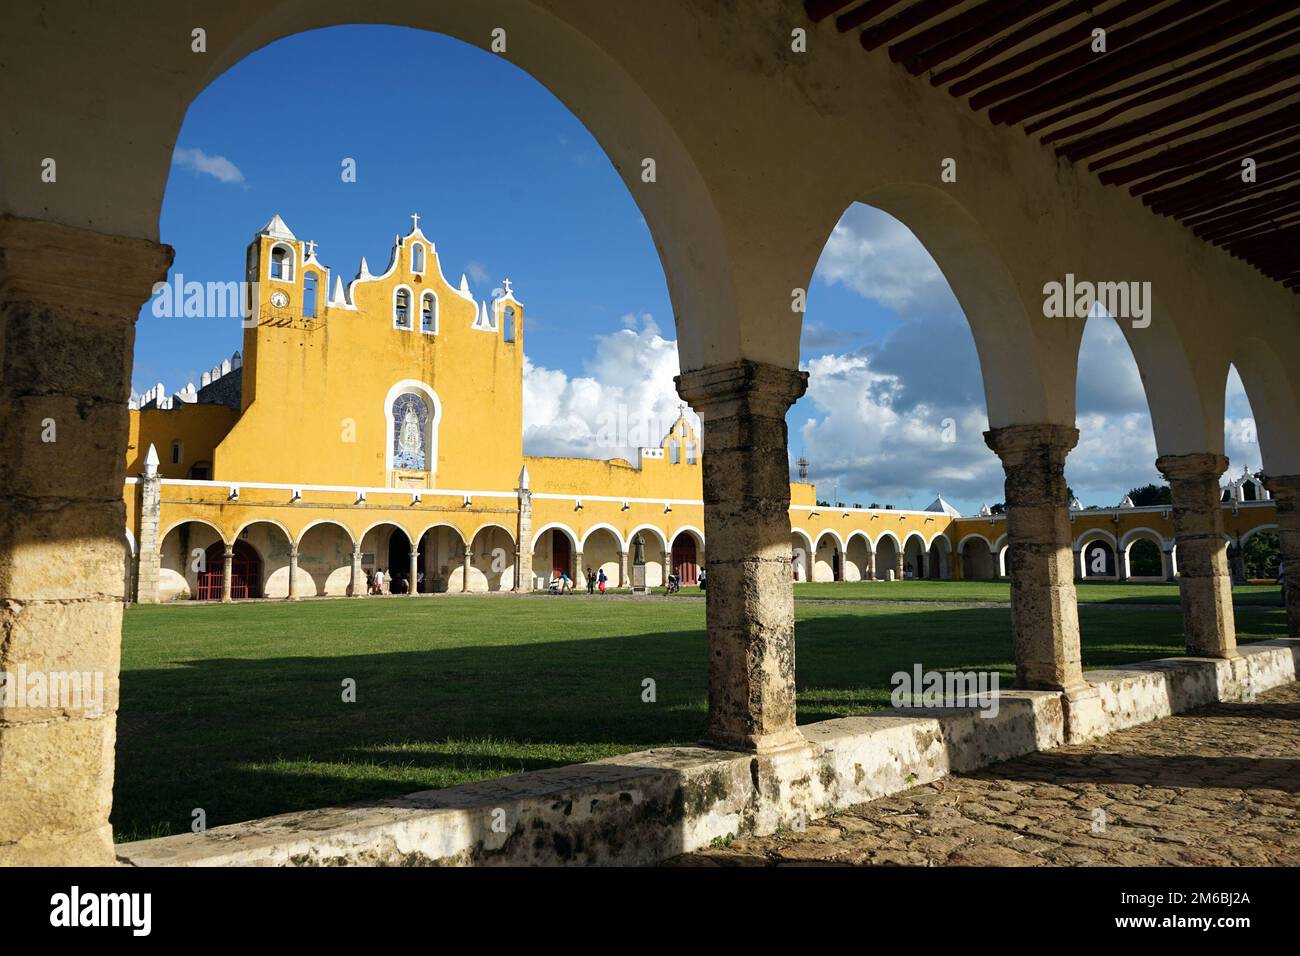 Das Kloster des Heiligen Antonius von Padua in der gelben Stadt Izamal. Izamal ist bekannt für seine hellgelben Gebäude, Yucatan, Mexiko. Stockfoto